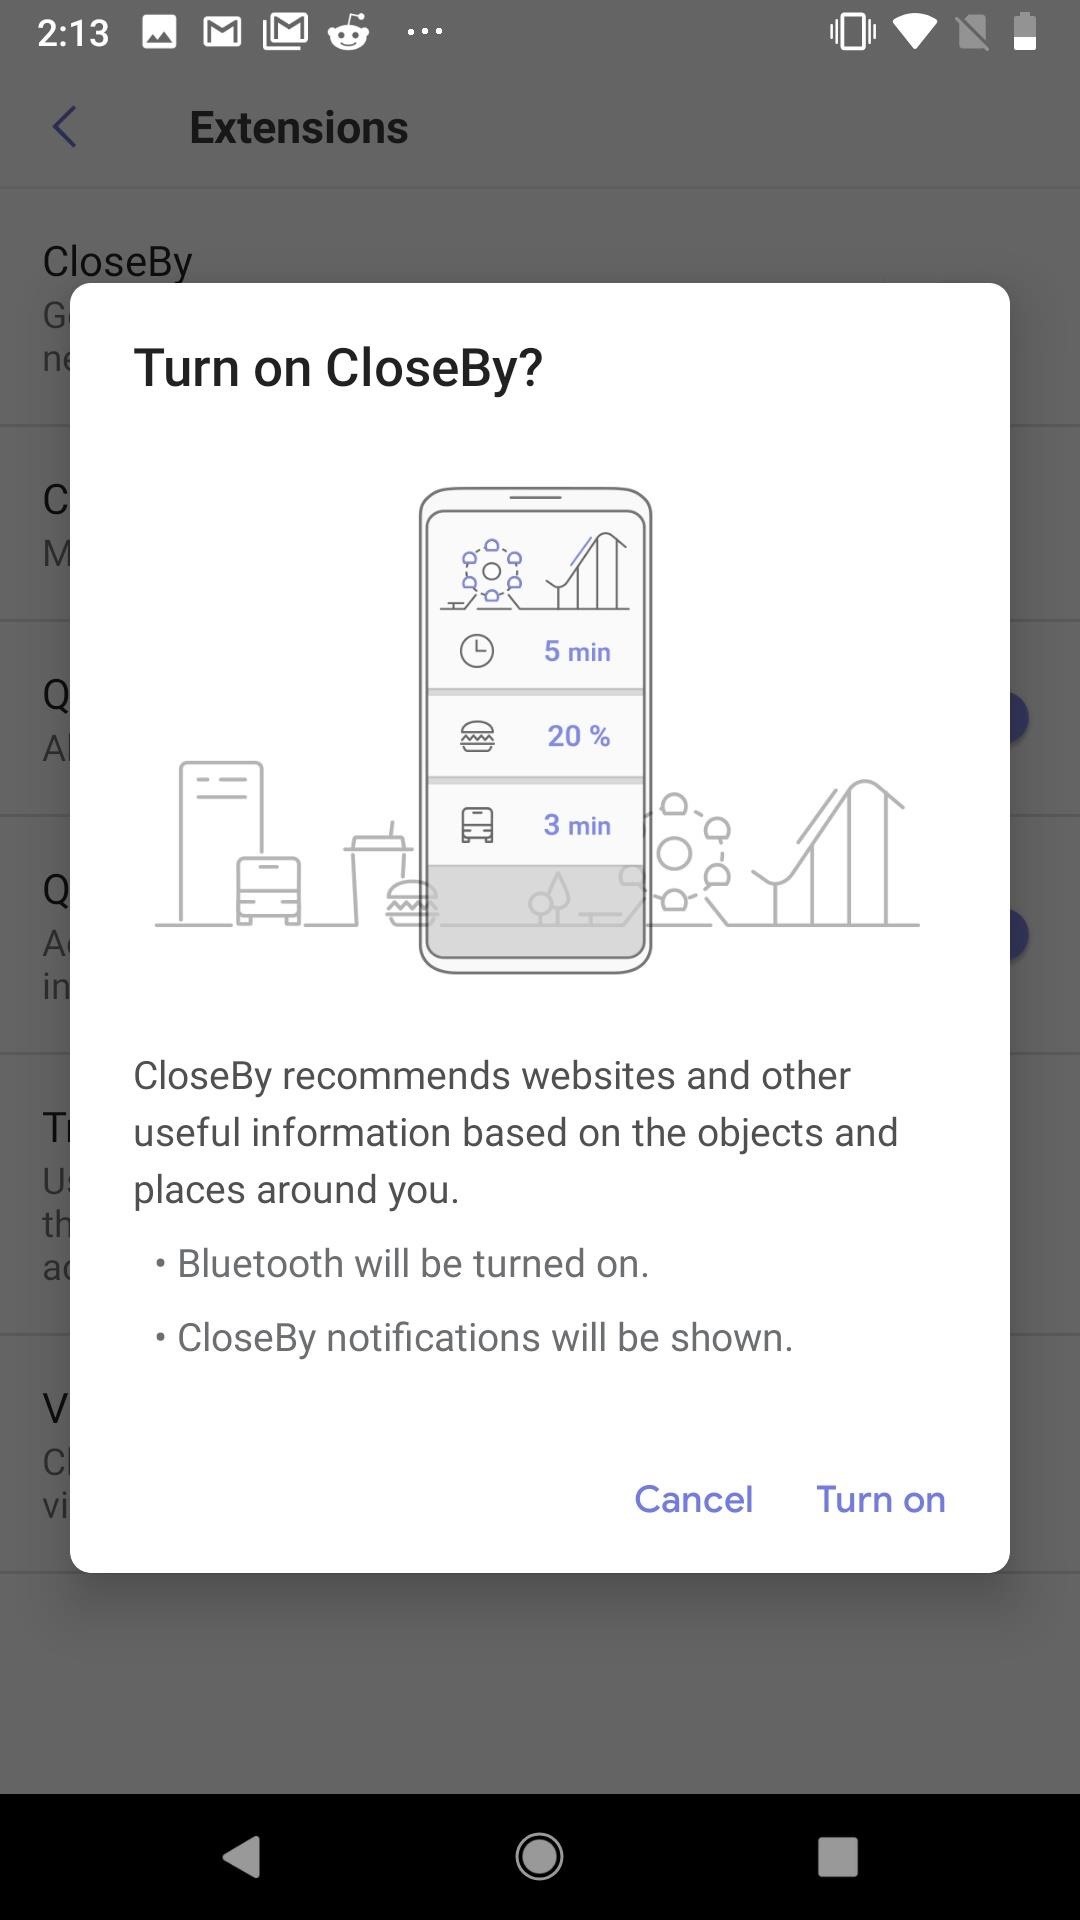 Samsung Internet 101: Cara Menggunakan Ekstensi untuk Memblokir Iklan, Memindai Kode QR, & Lainnya